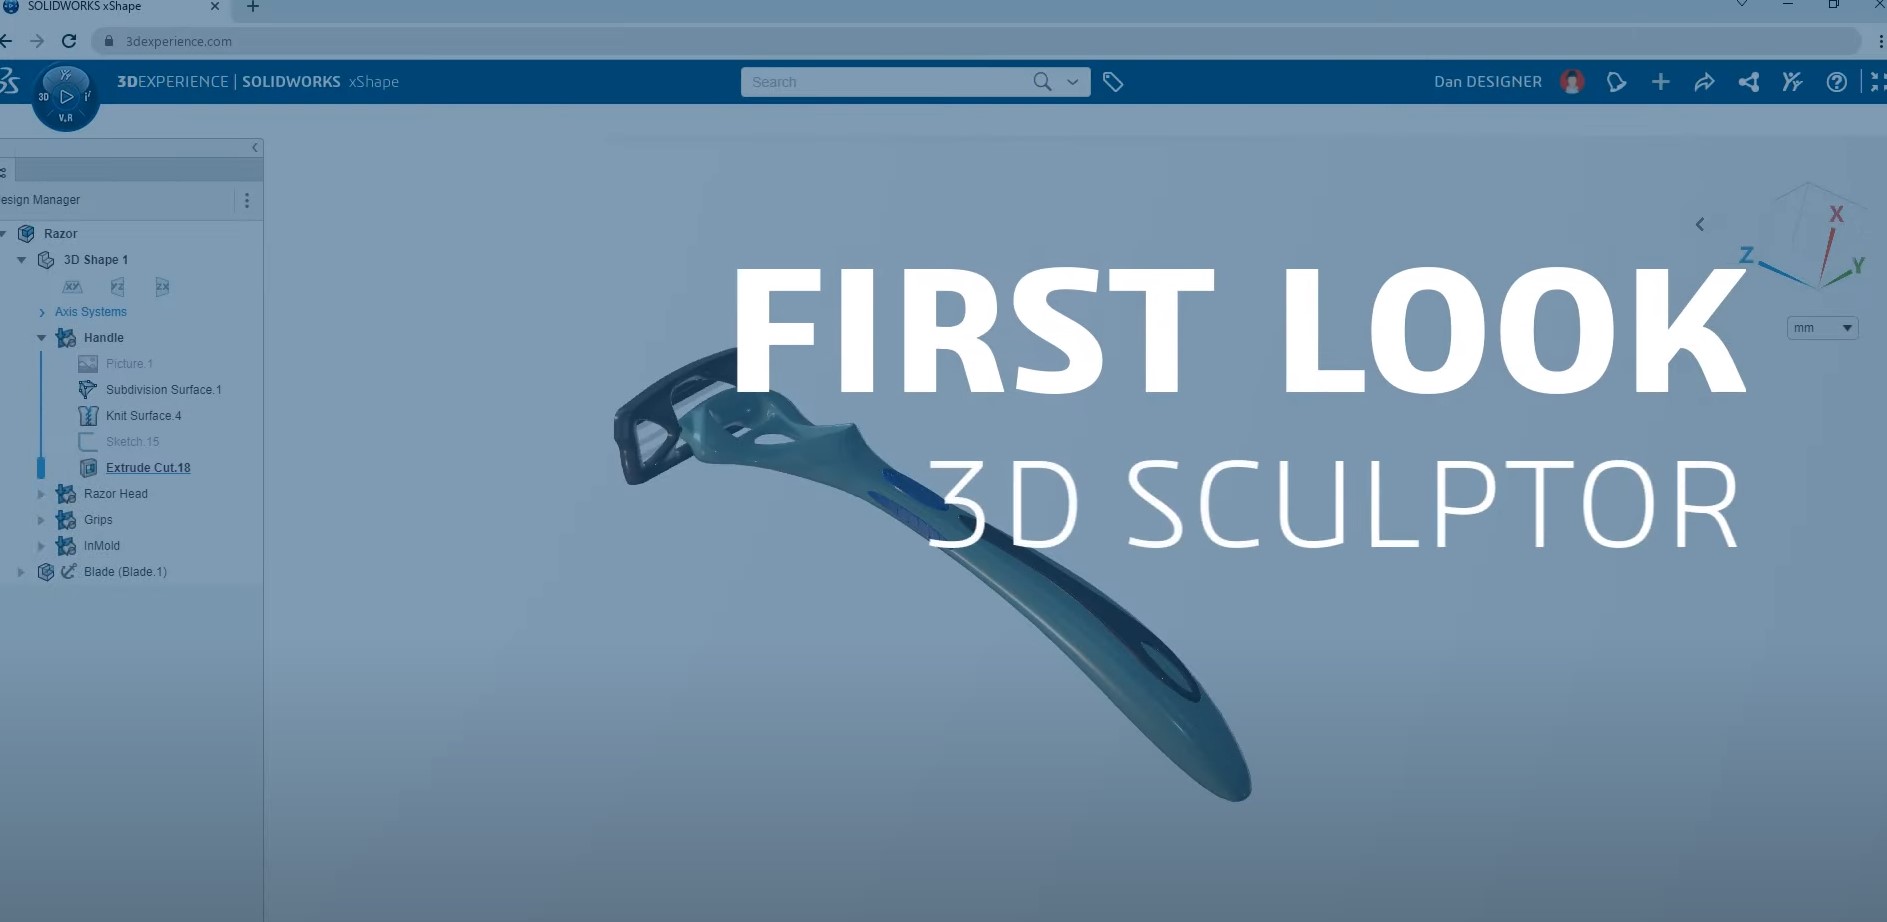 First Look - 3D Sculptor